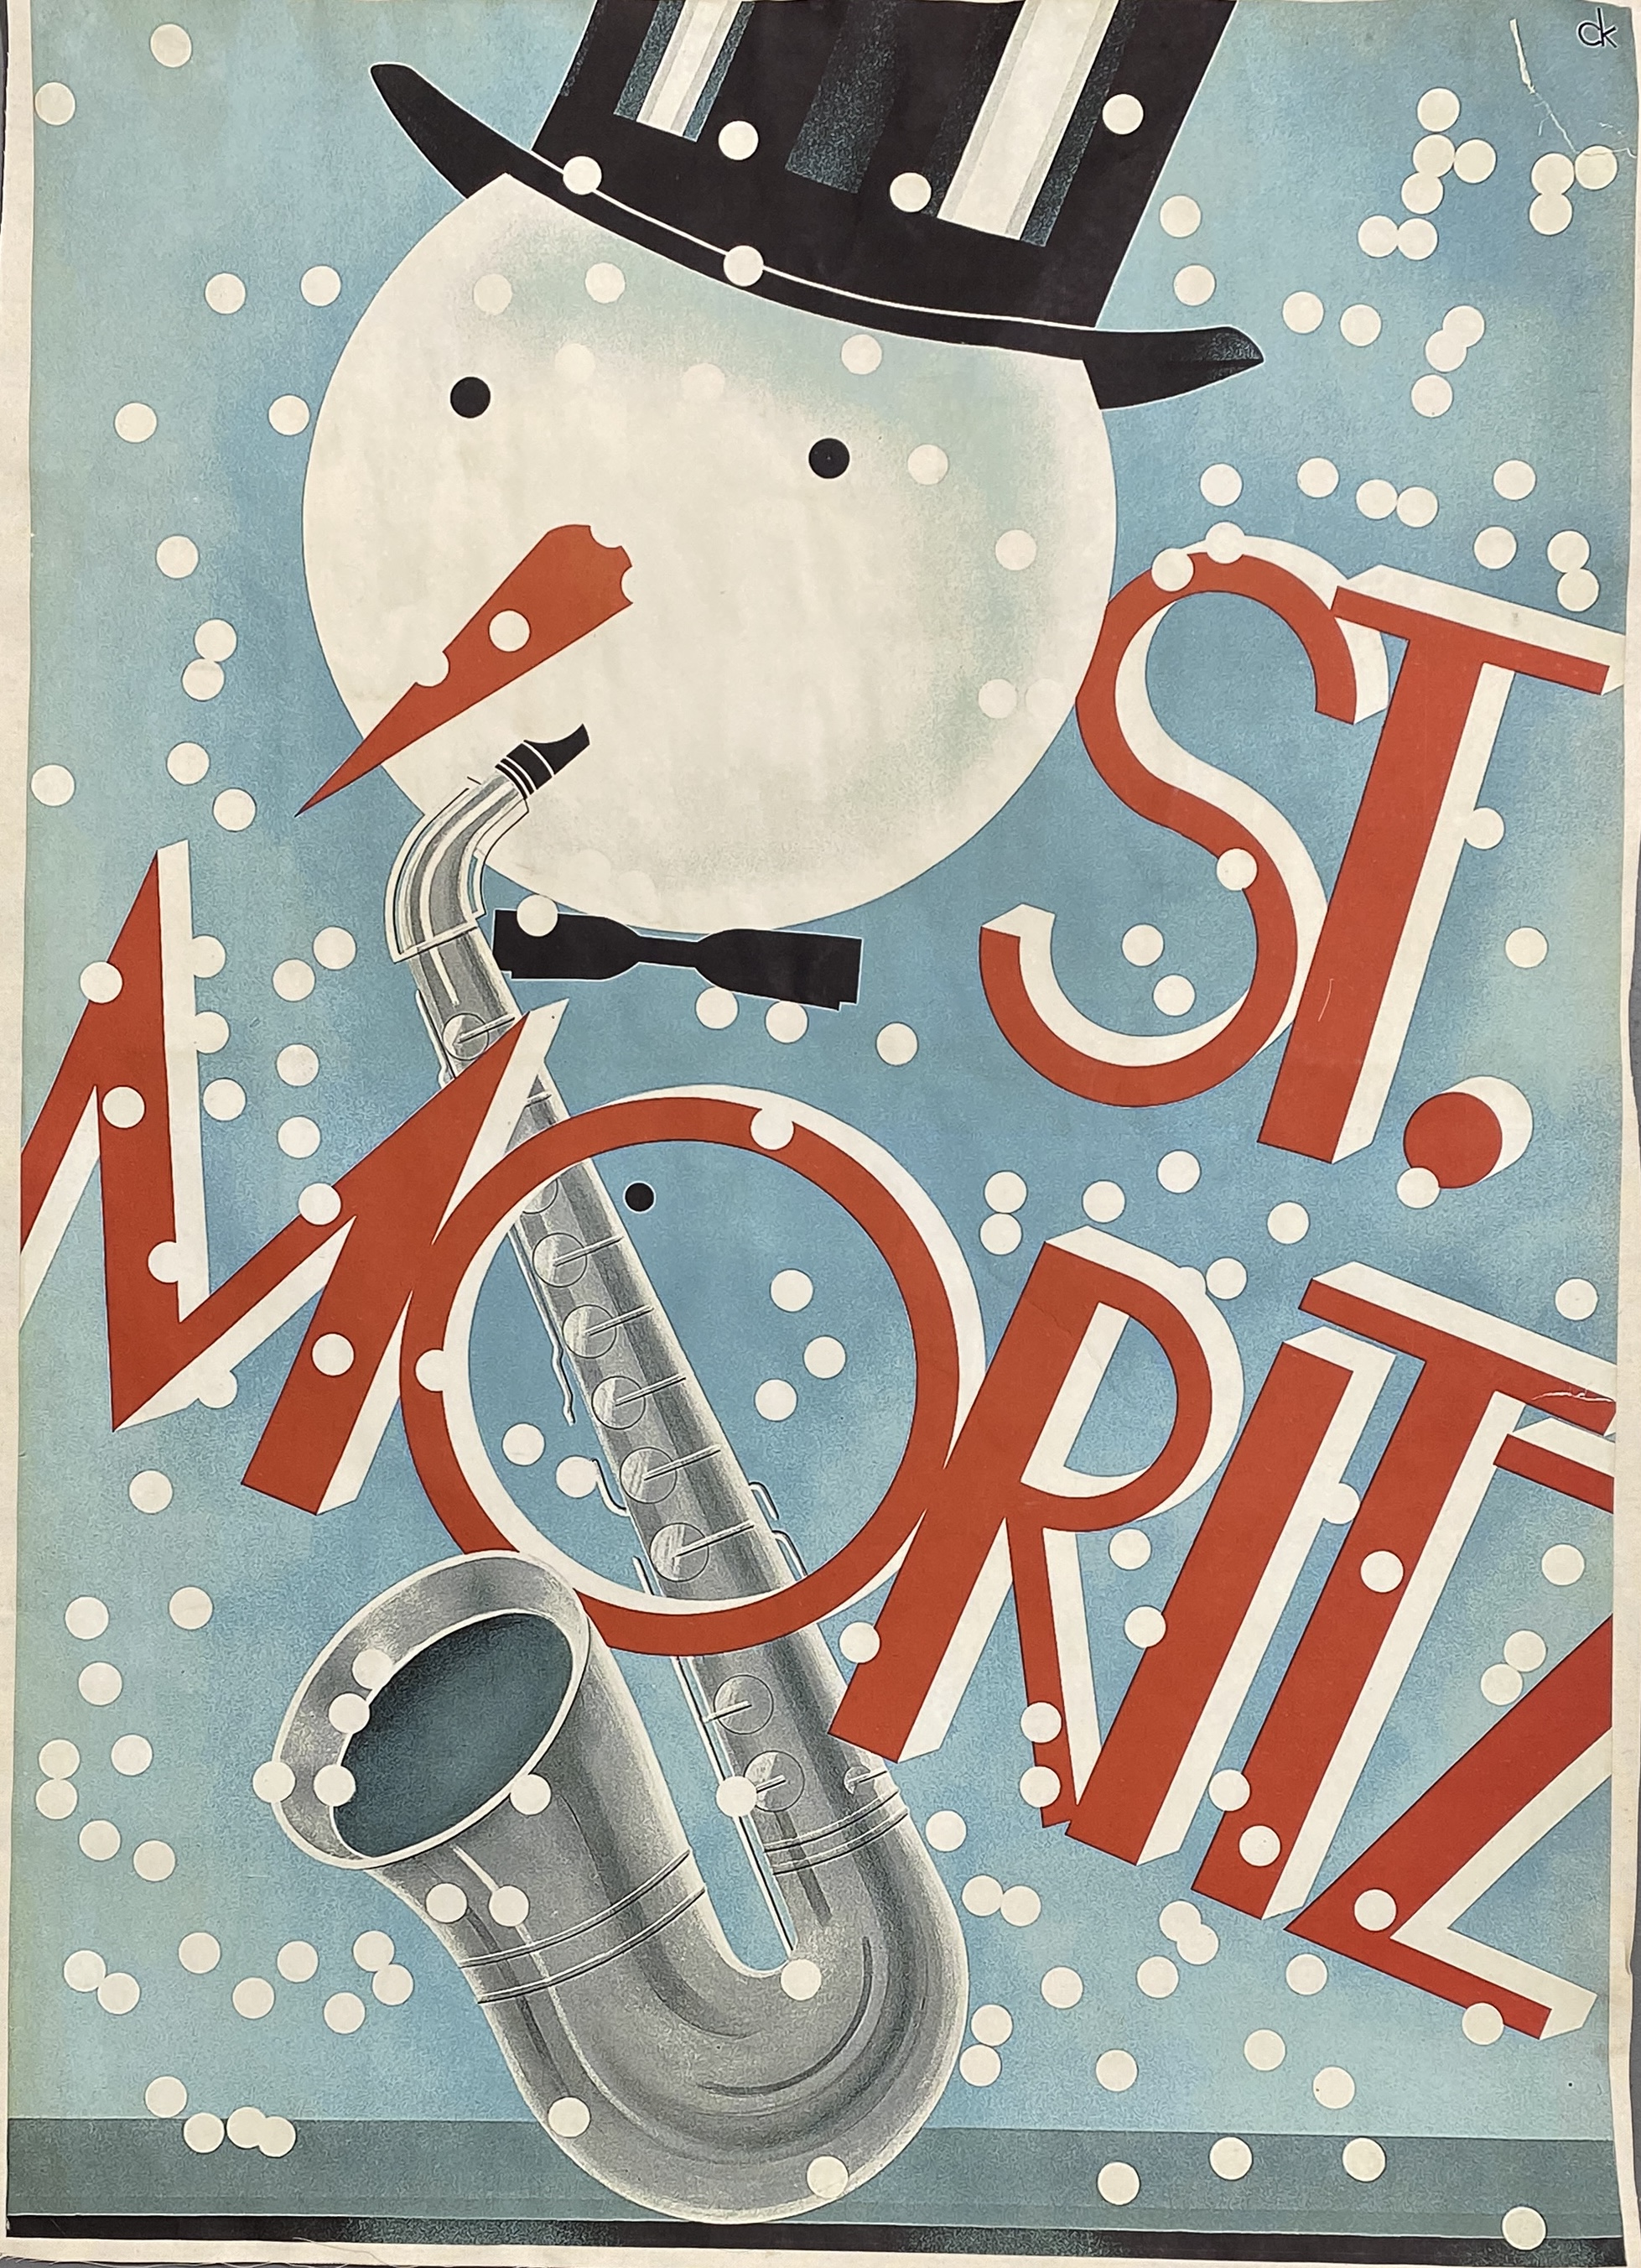 St. Moritz - Swiss Poster, Backed to Linen